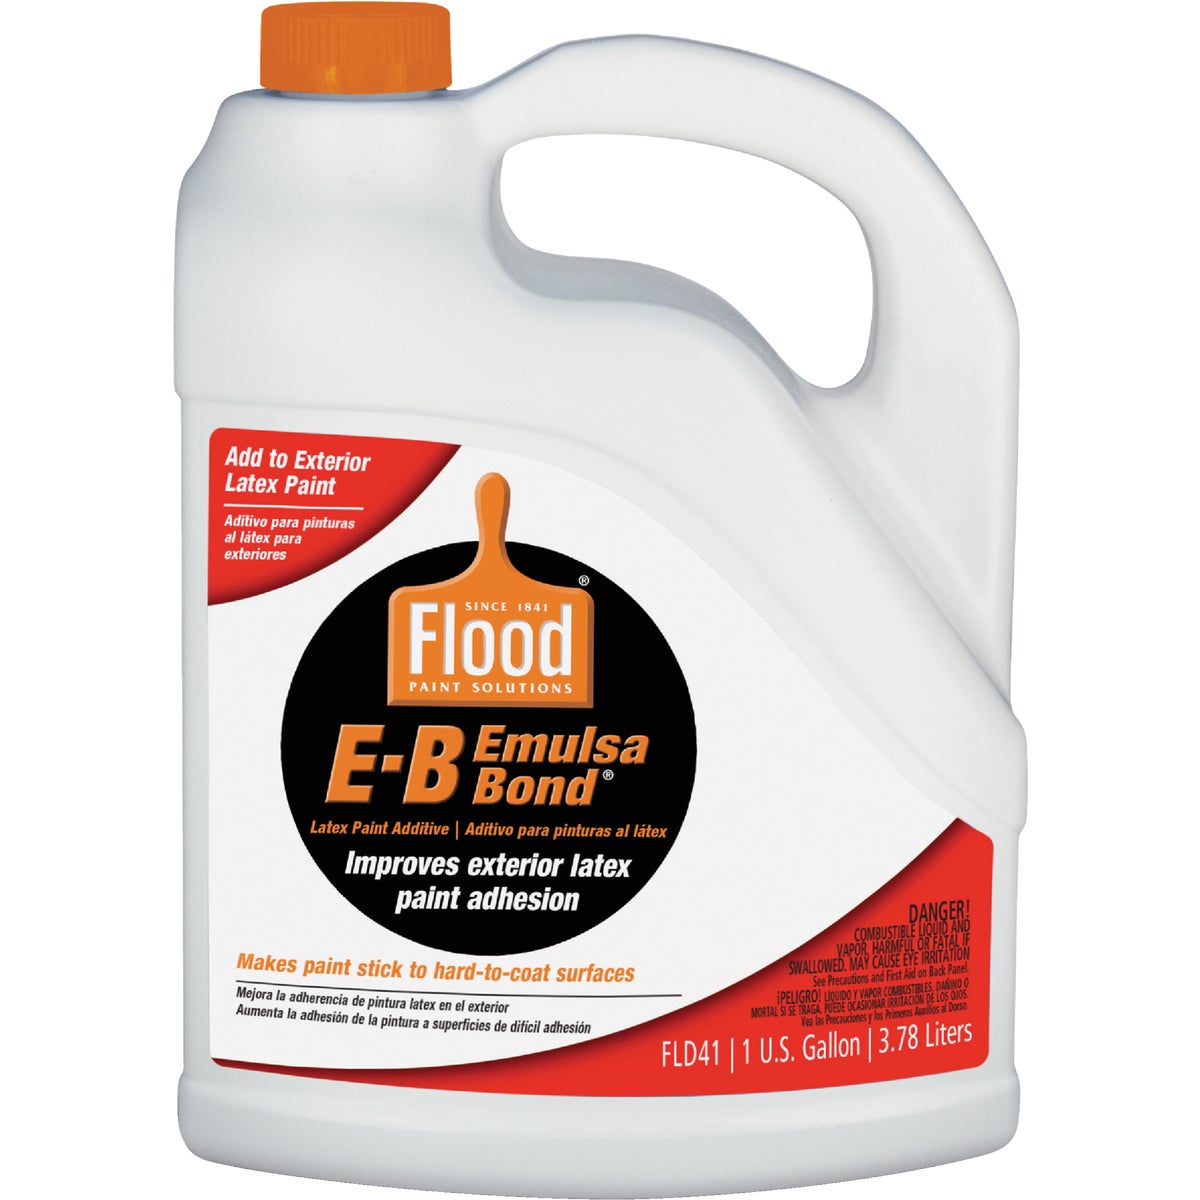 FLD41 01 Flood E-B Emulsa-Bond Stir-In Bonding Paint Primer Additive